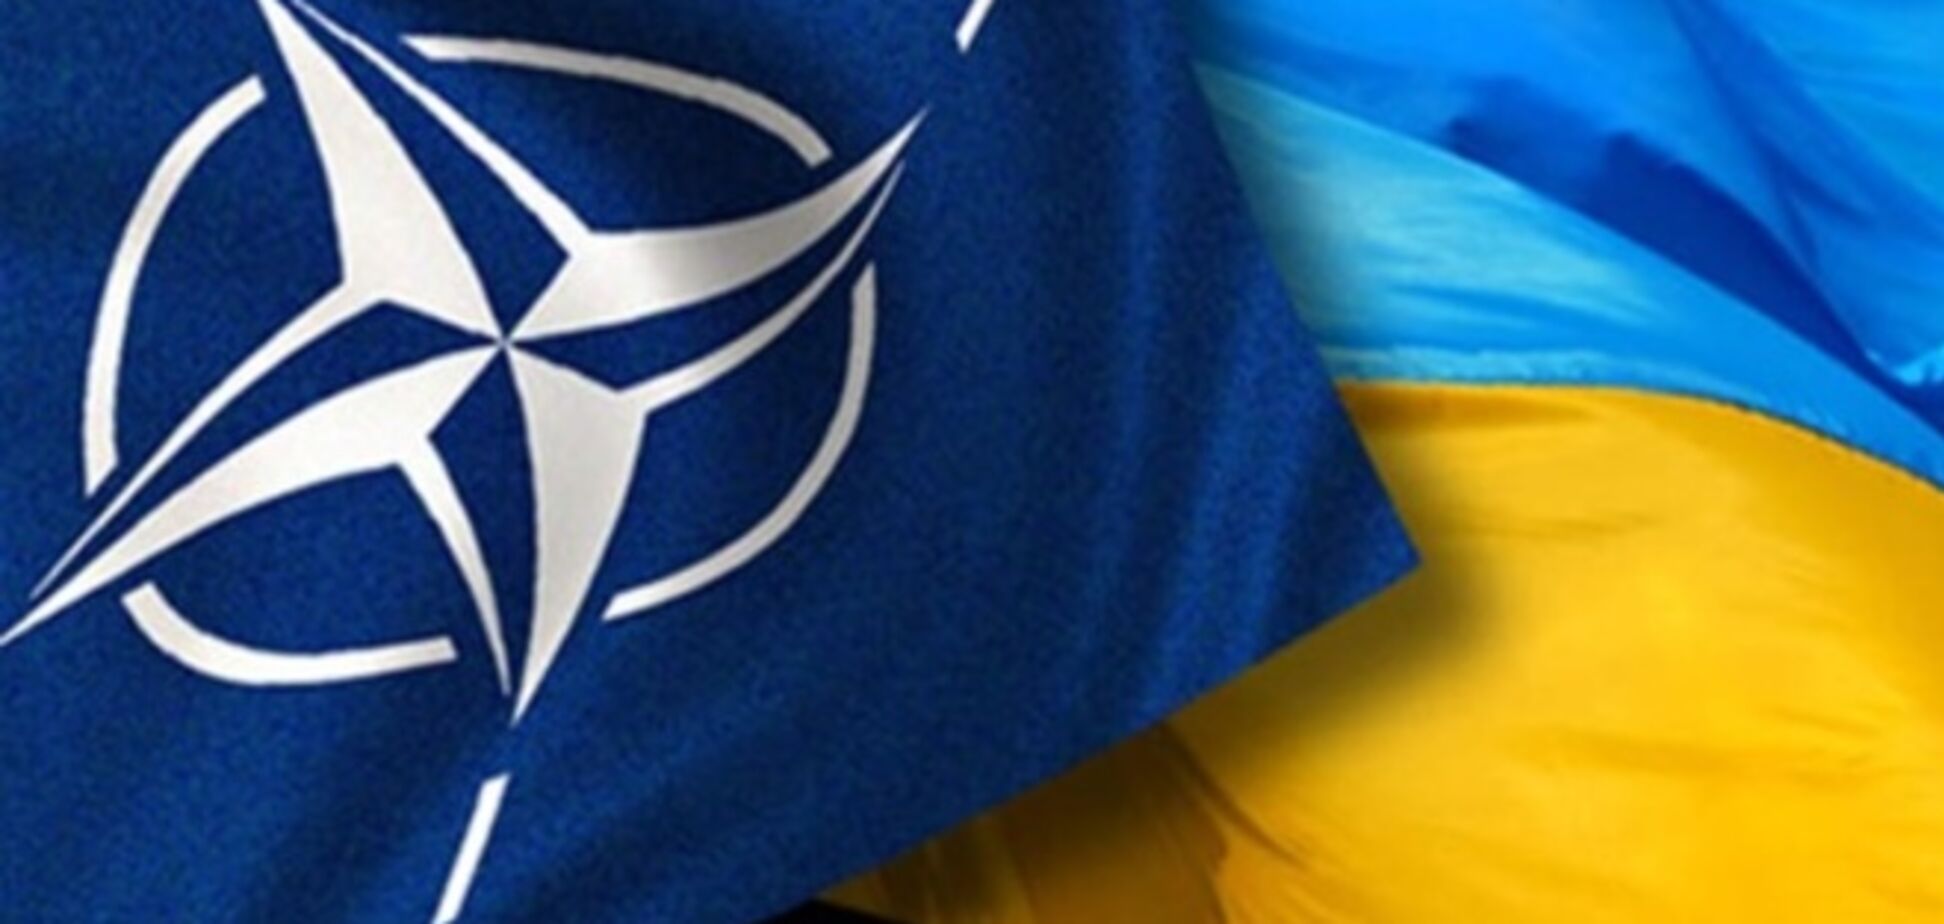 Референдум про вступ в НАТО - спланована провокація проти України